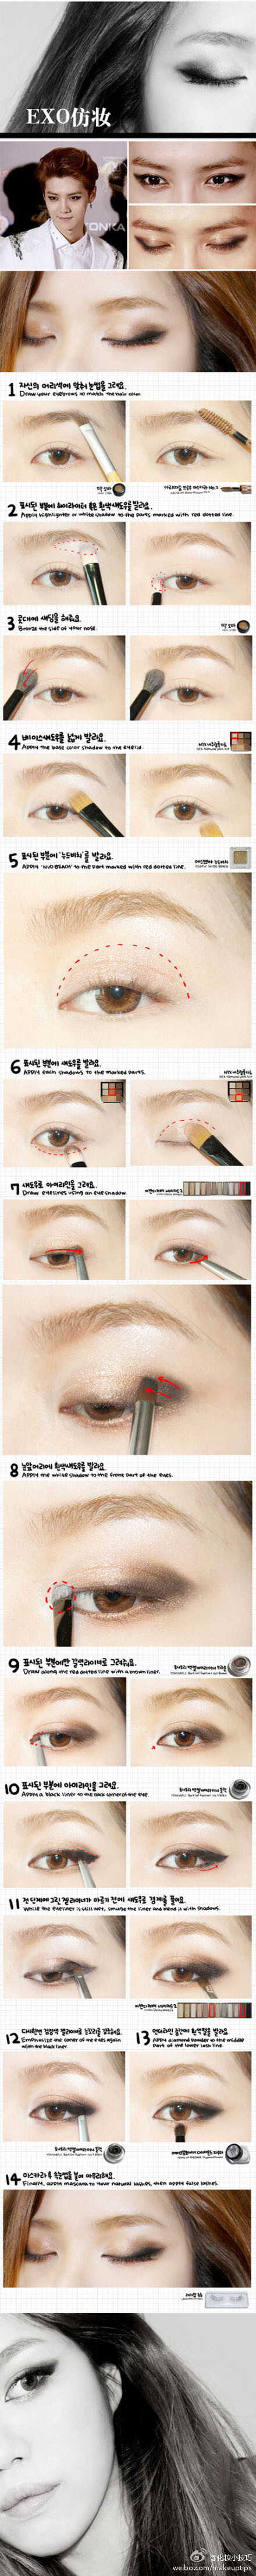 韩国达人仿EXO组合猫式眼影妆。很fashion......